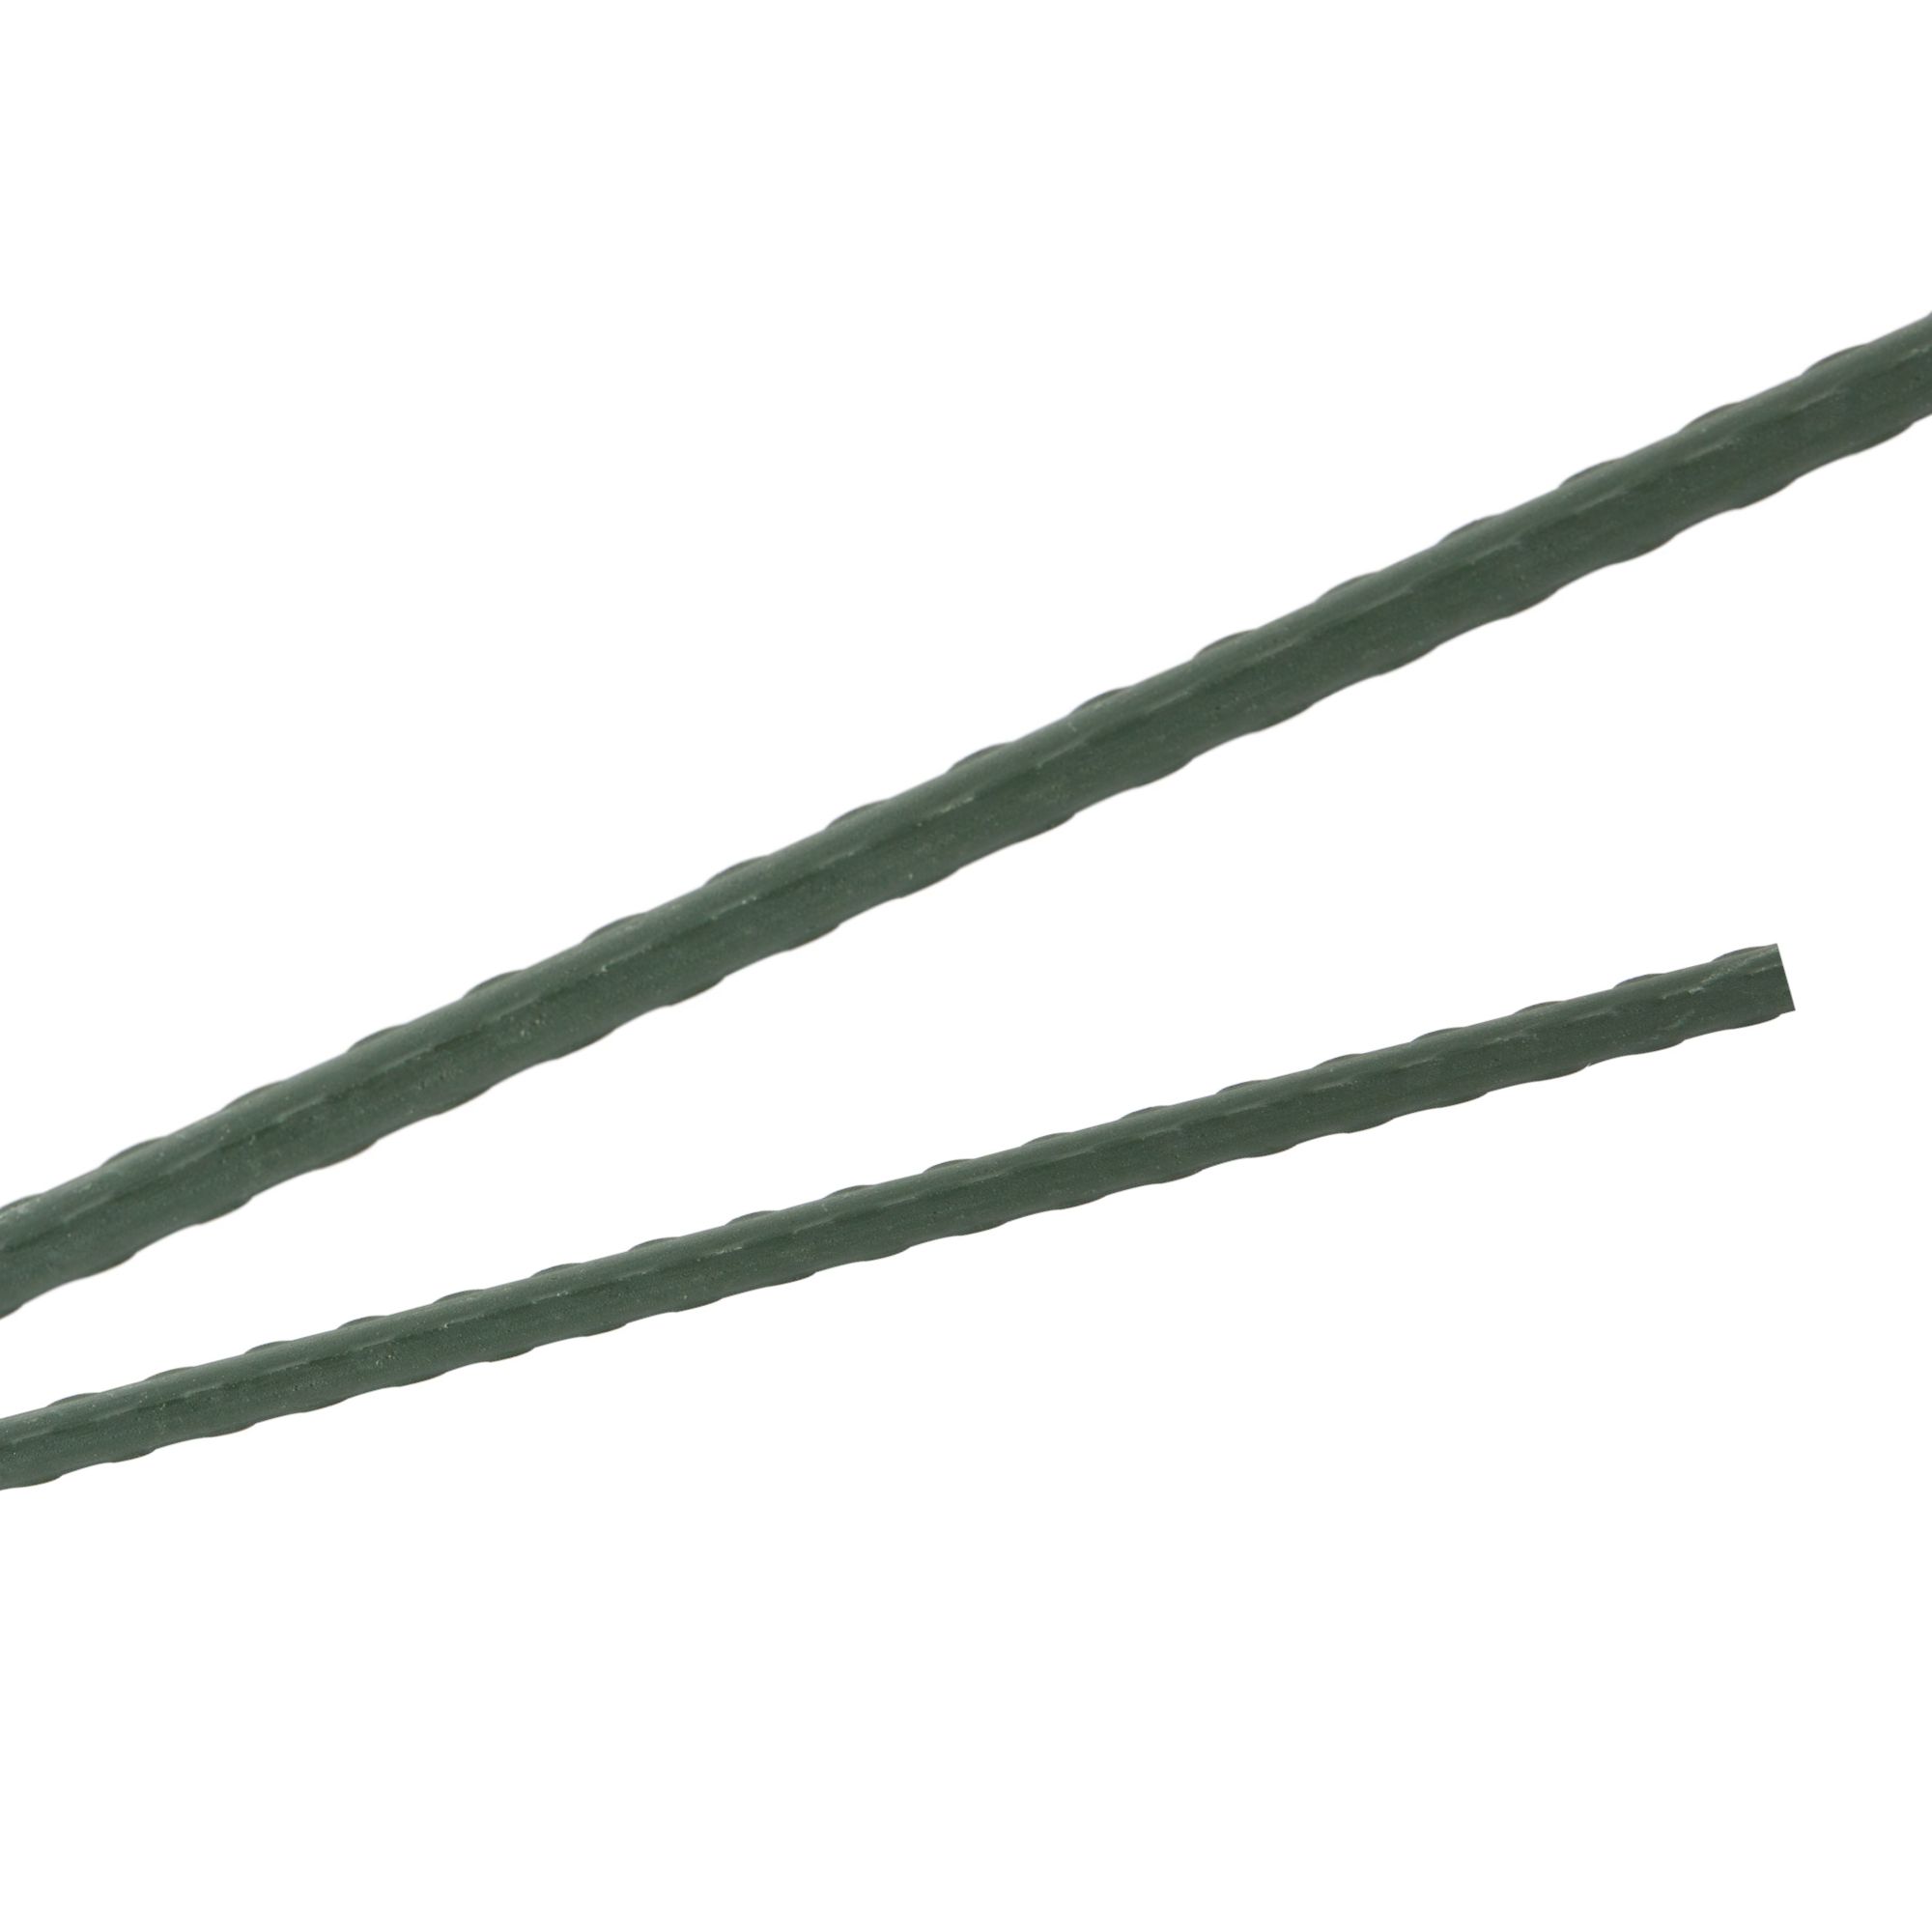 Tyč podpěrná, 20mm, 180cm, kov+PVC, zelená 0.280000 Kg GIGA Sklad20 211770 67